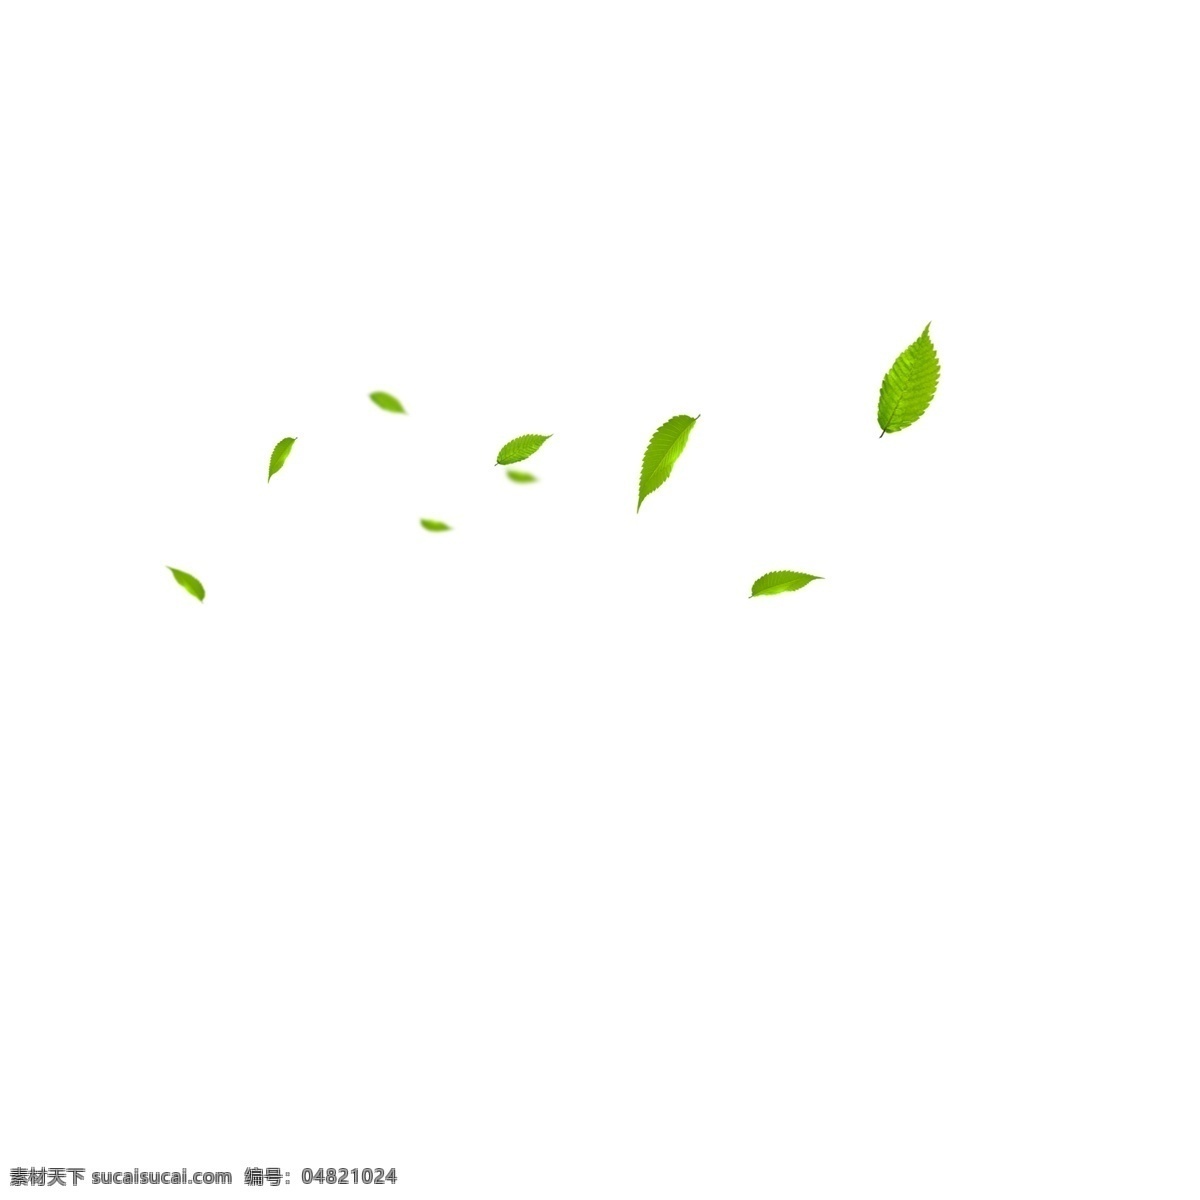 卡通 漂浮 绿叶 绿色叶子 植物绿叶 漂浮的树叶 卡通插图 创意卡通下载 插图 png图下载